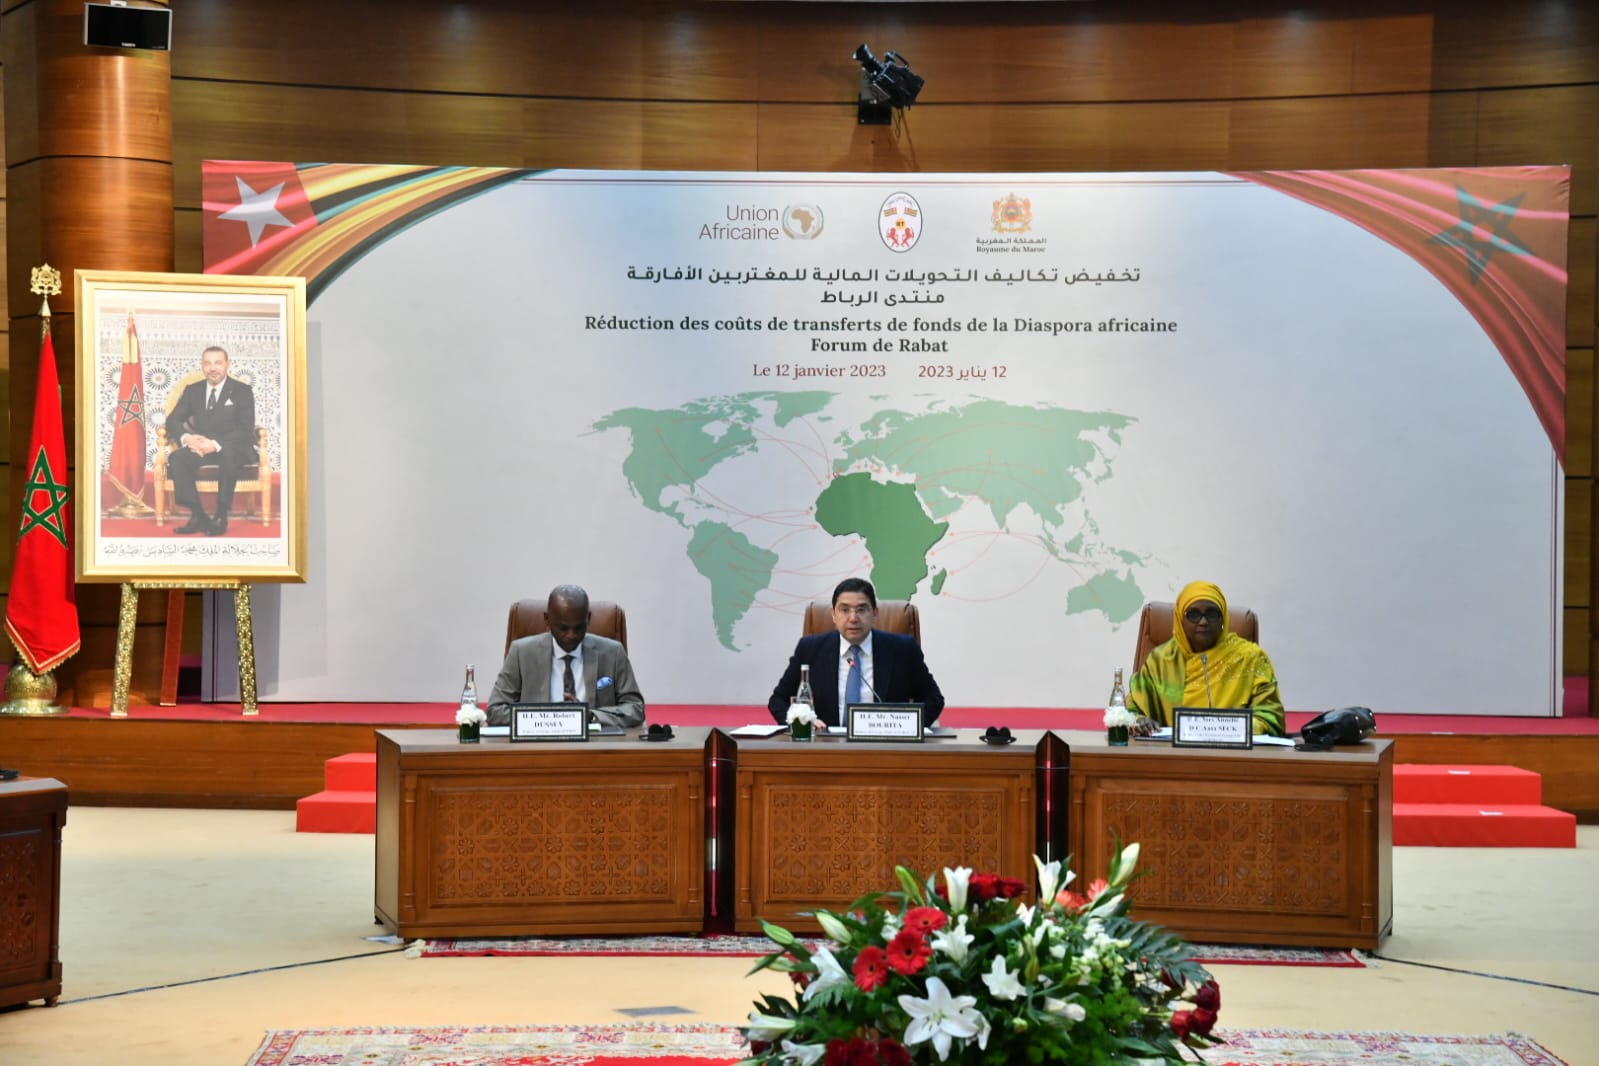 Forum de Rabat: le Togo appelle à des solutions innovantes pour réduire les coûts des transferts de la diaspora africaine